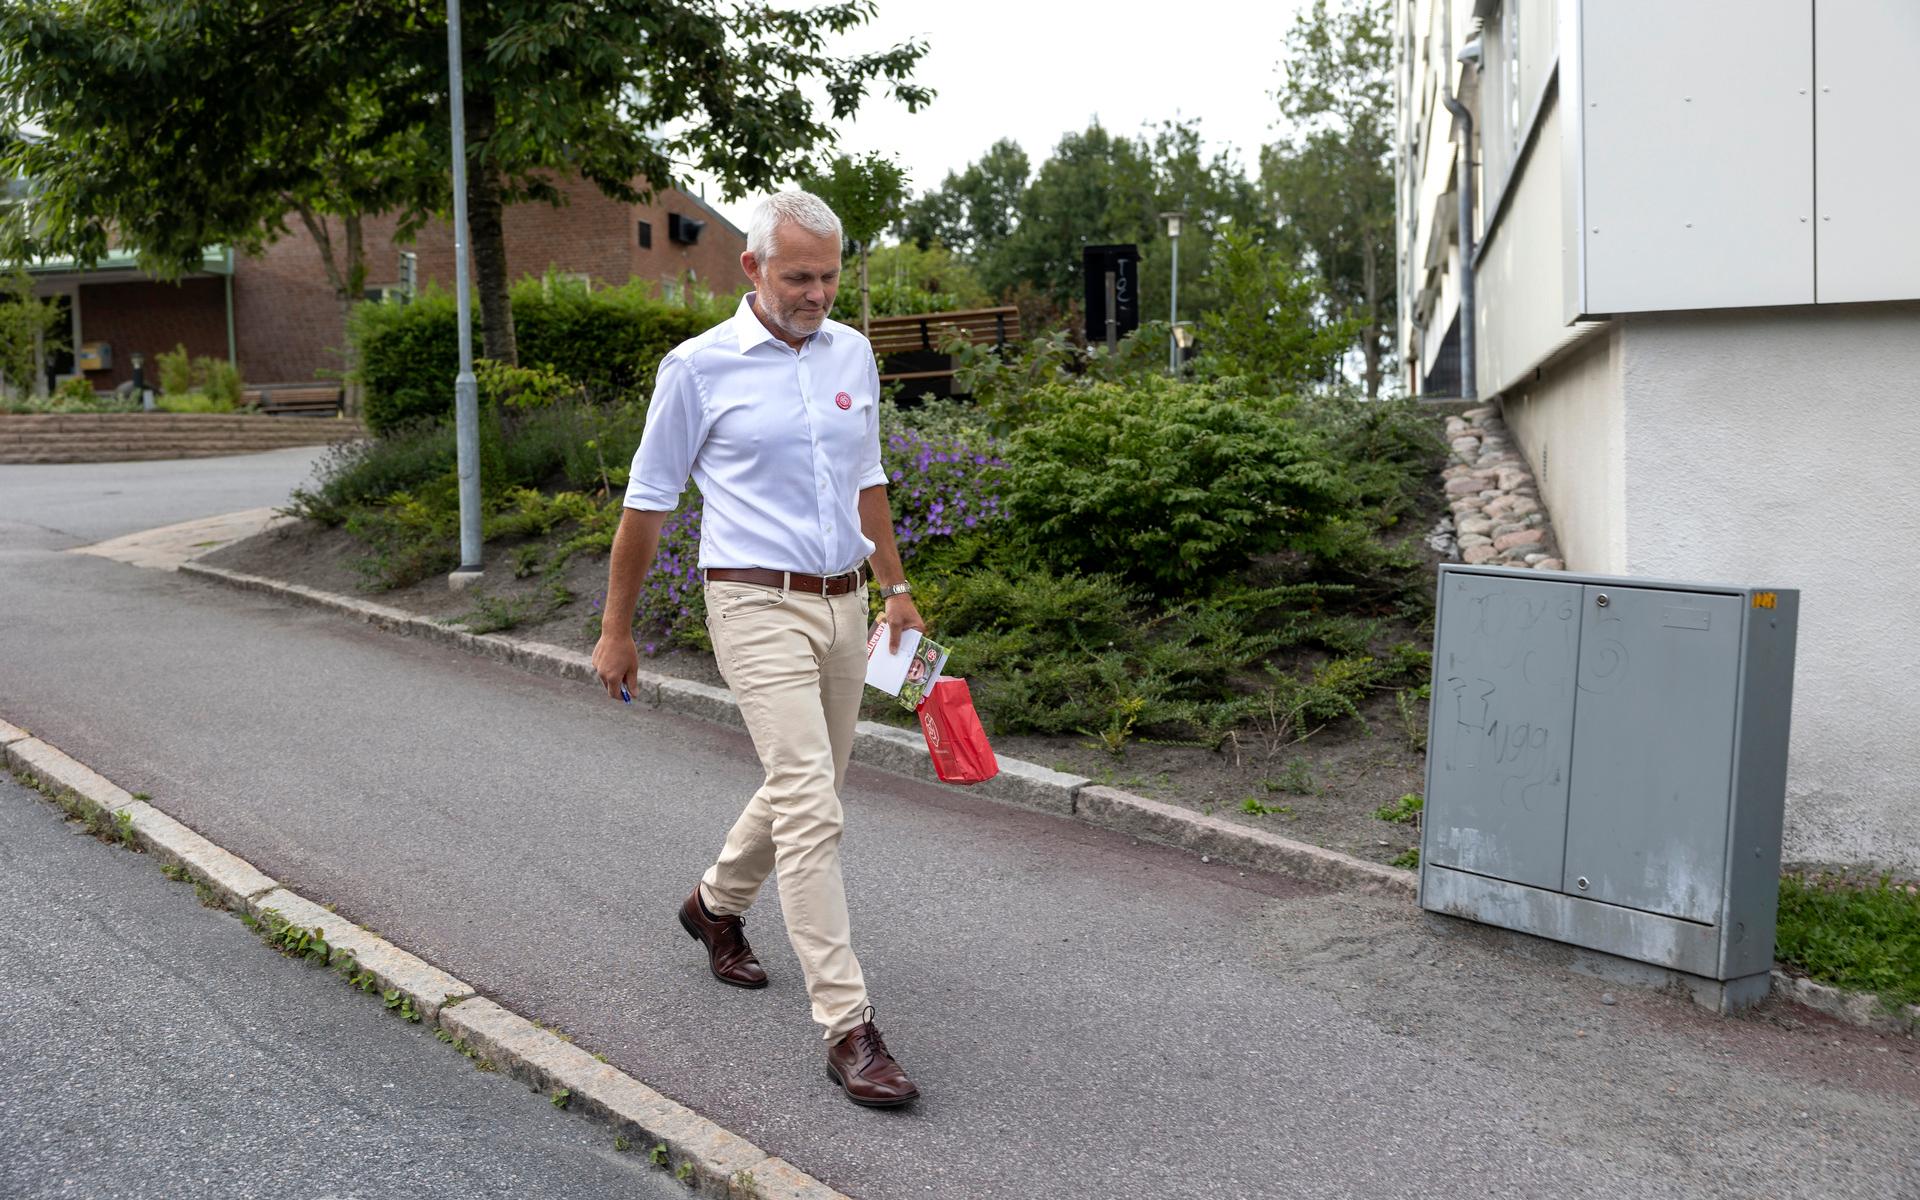 Socialdemokraternas gruppledare Jonas Attenius knackar dörr på Guldheden. Han berättar att trygghetsfrågan ofta kommer upp när han är ute och pratar med folk.